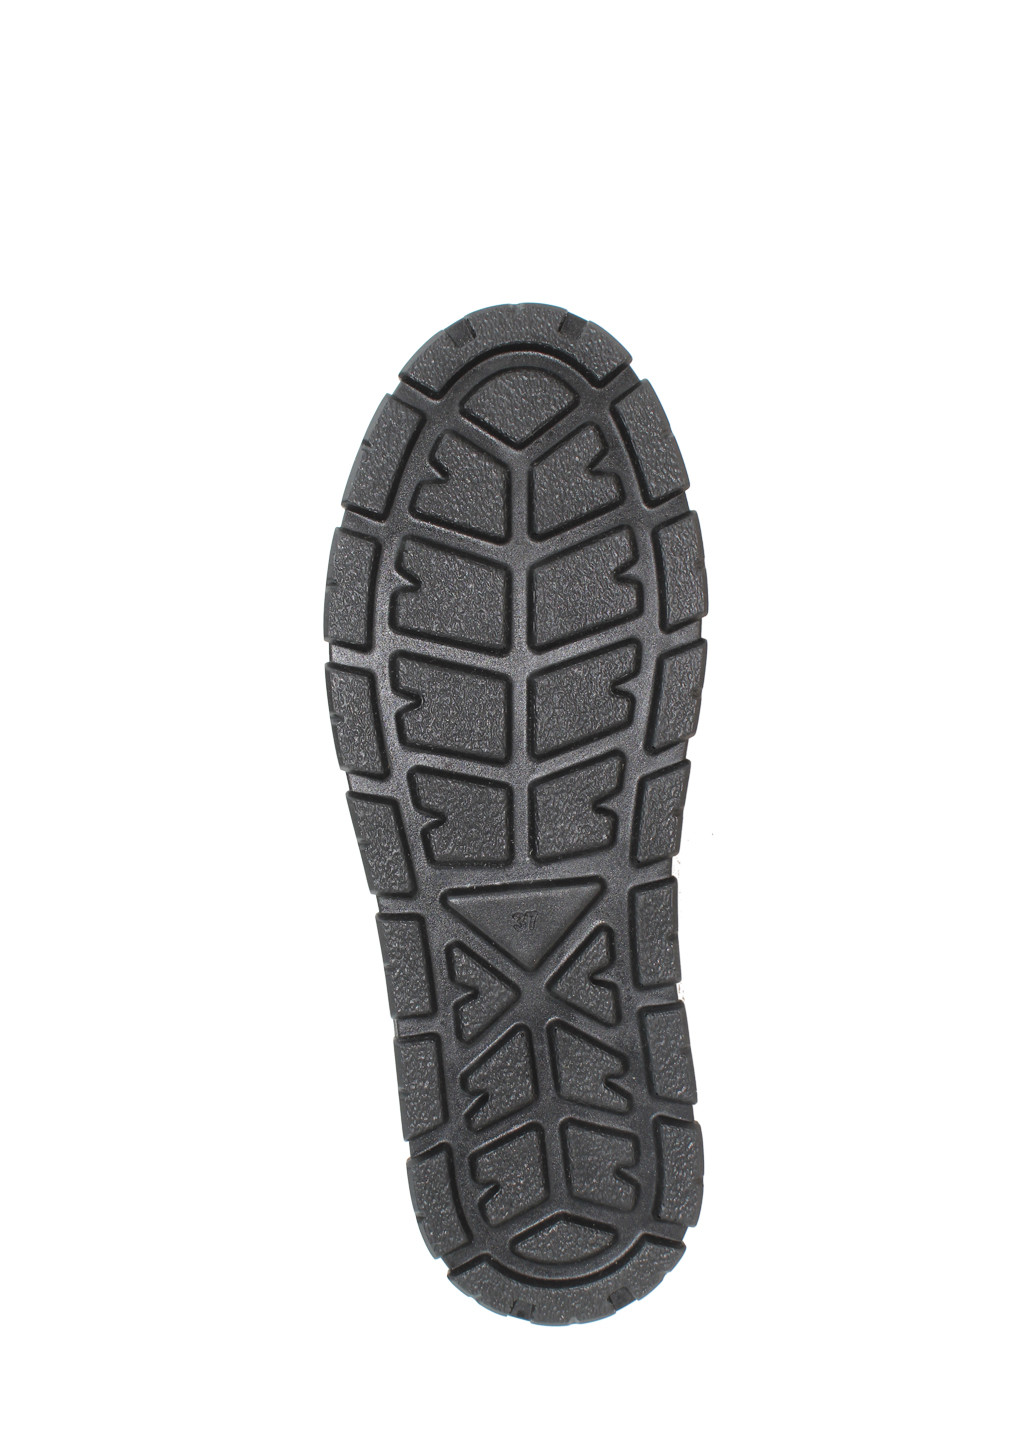 Зимние ботинки a-130-11 черный Alvista из натуральной замши